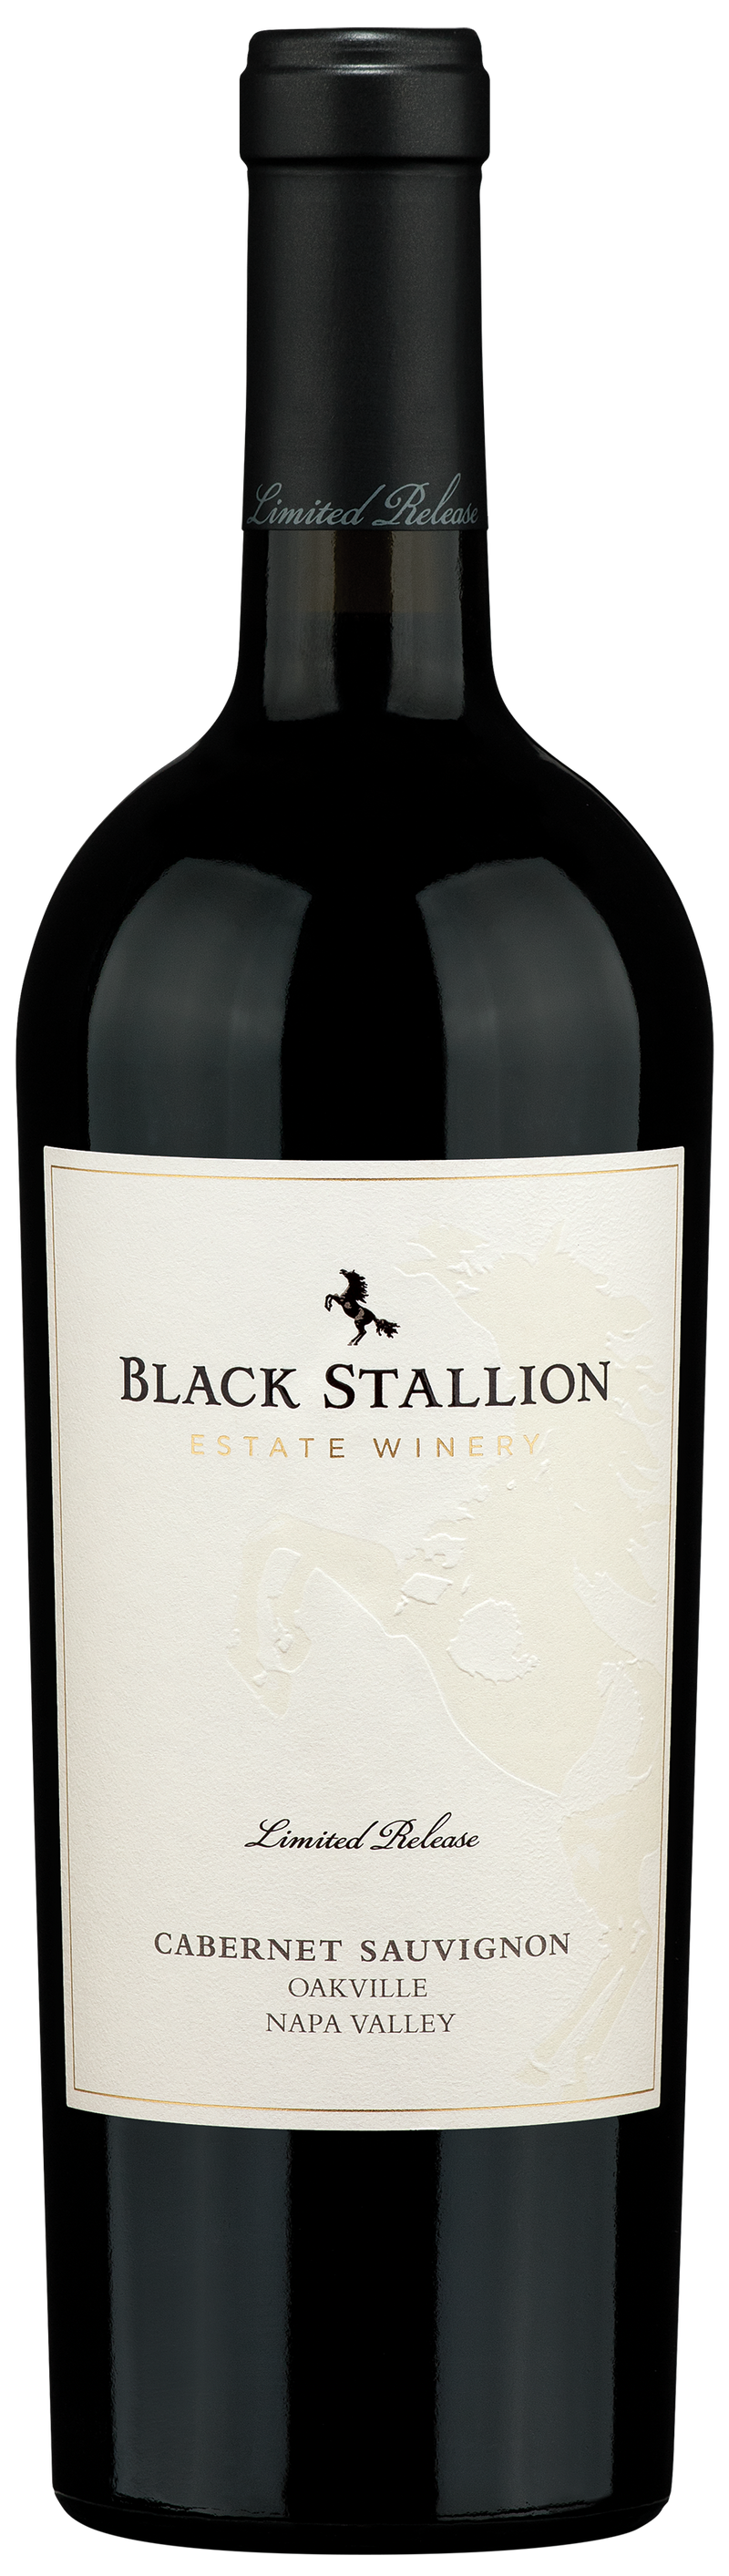 Black Stallion Napa Cabernet Sauvignon Limited Release